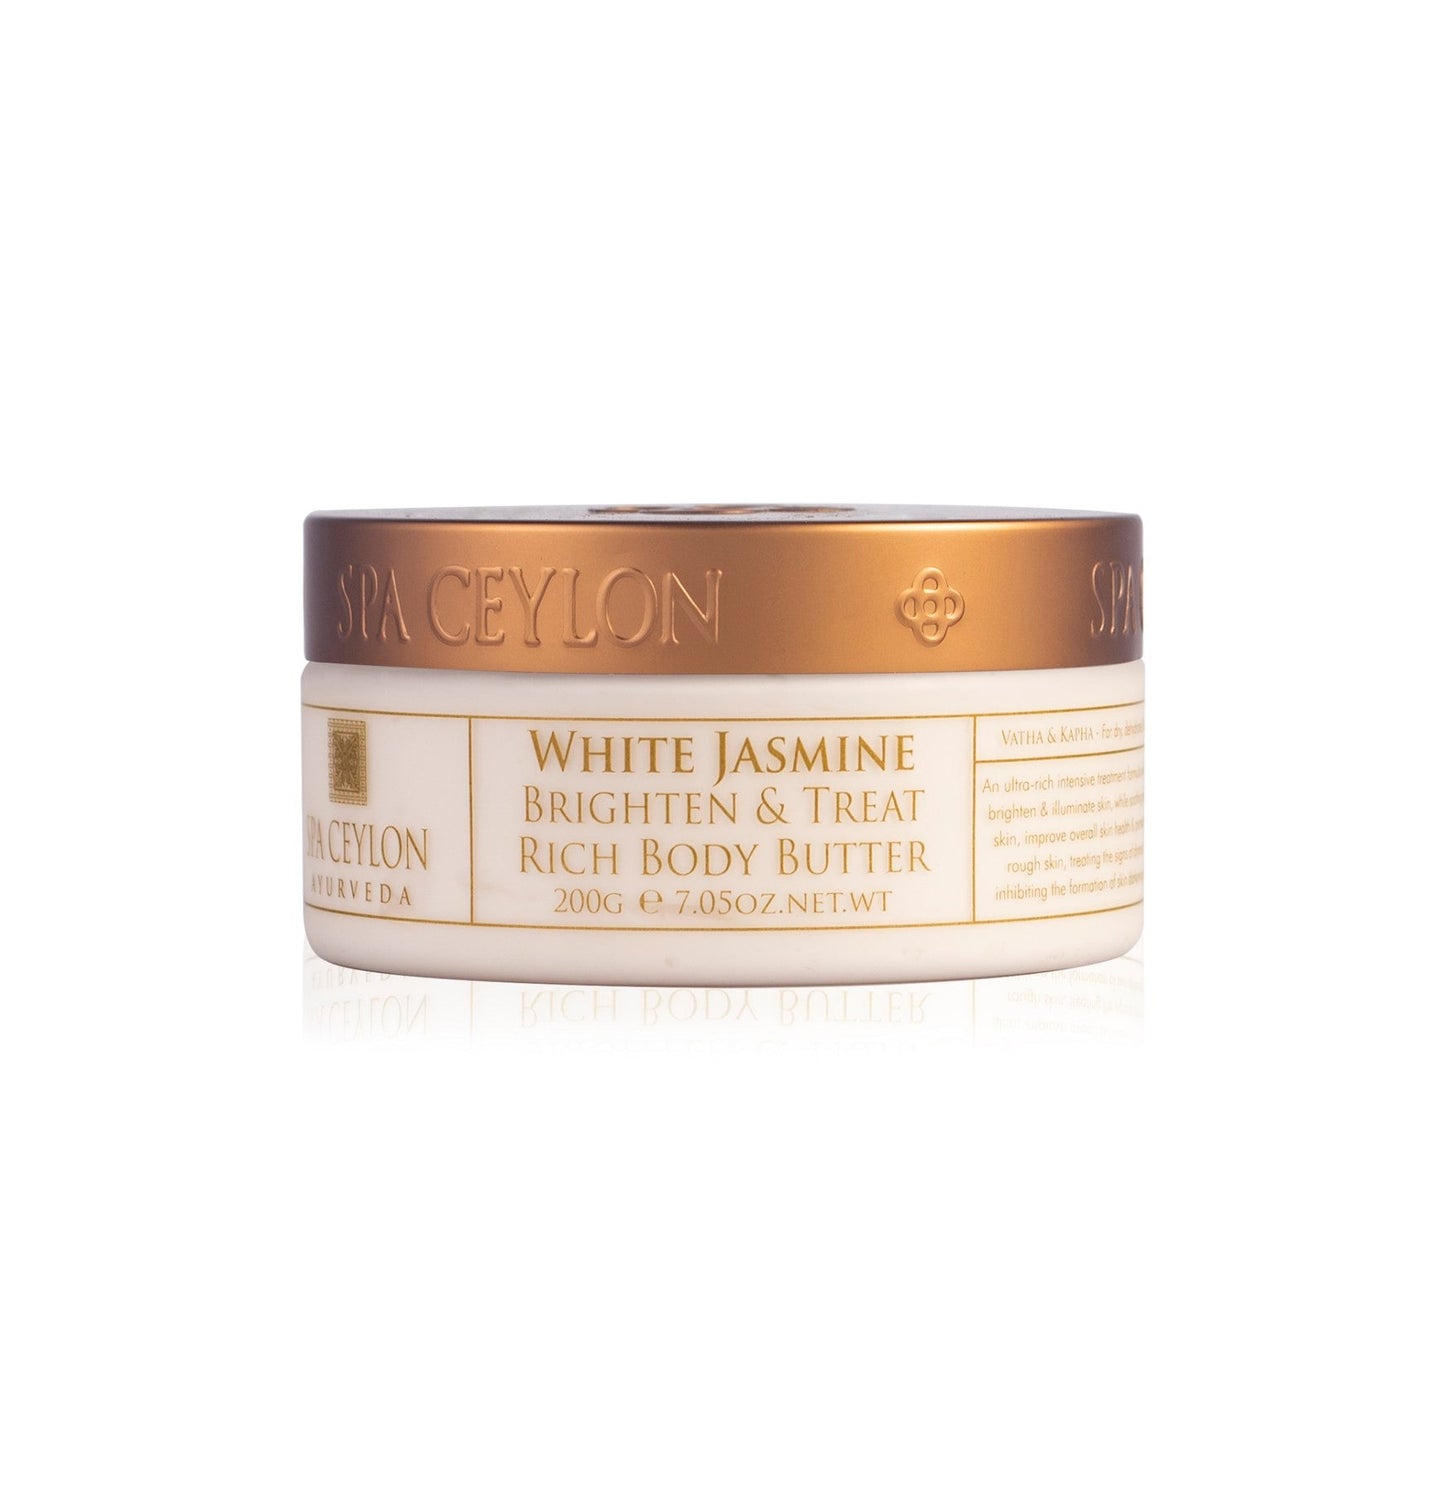 White Jasmine-Brighten Rich Body Butter 200g